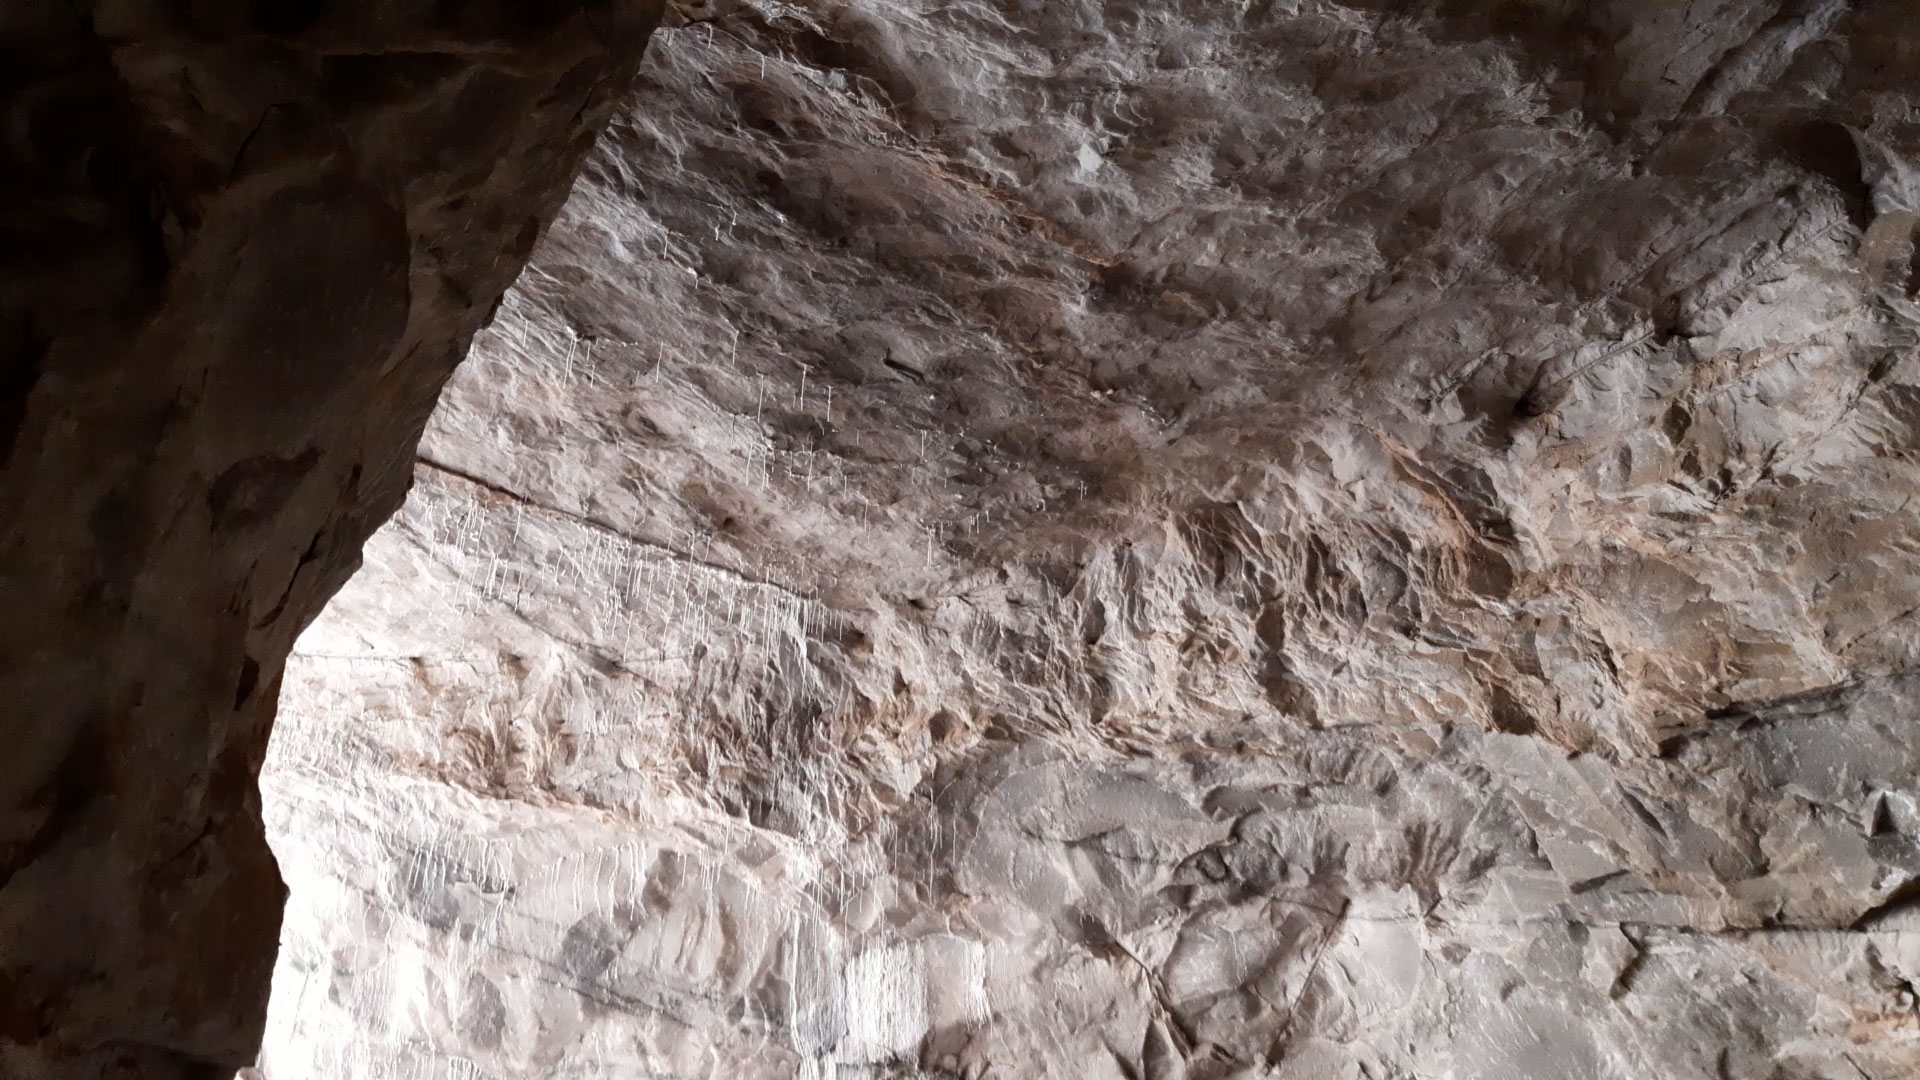 غار نمکی گرمسار، عکس و اطلاعات (فارسی و انگلیسی) + ویدئو معرفی